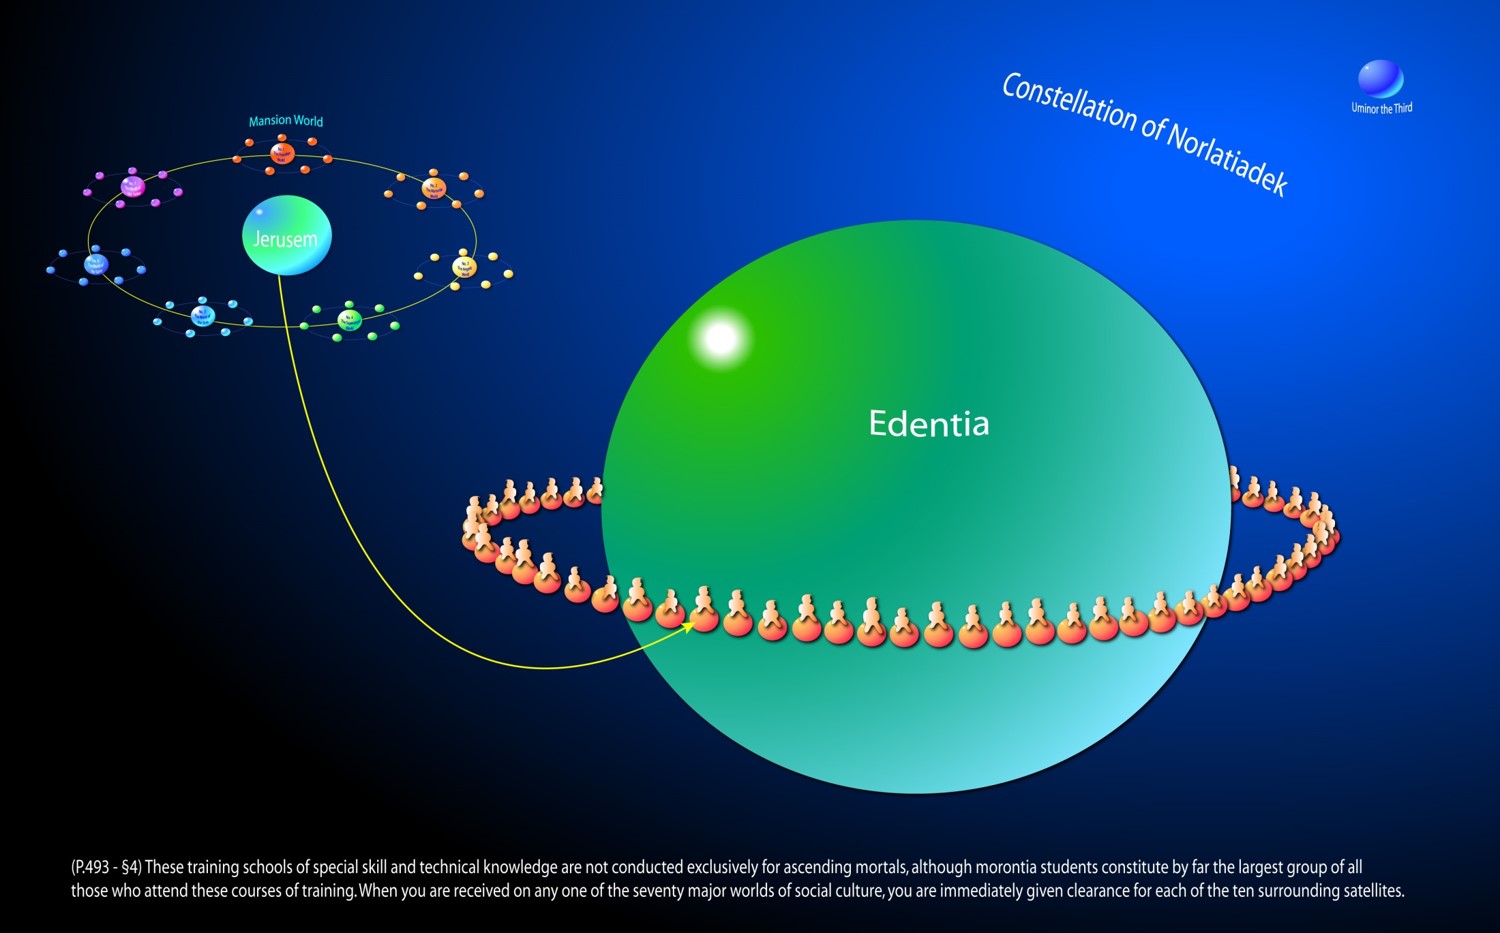 6 Edentia, the headquarters of your constellation of Norlatiadek